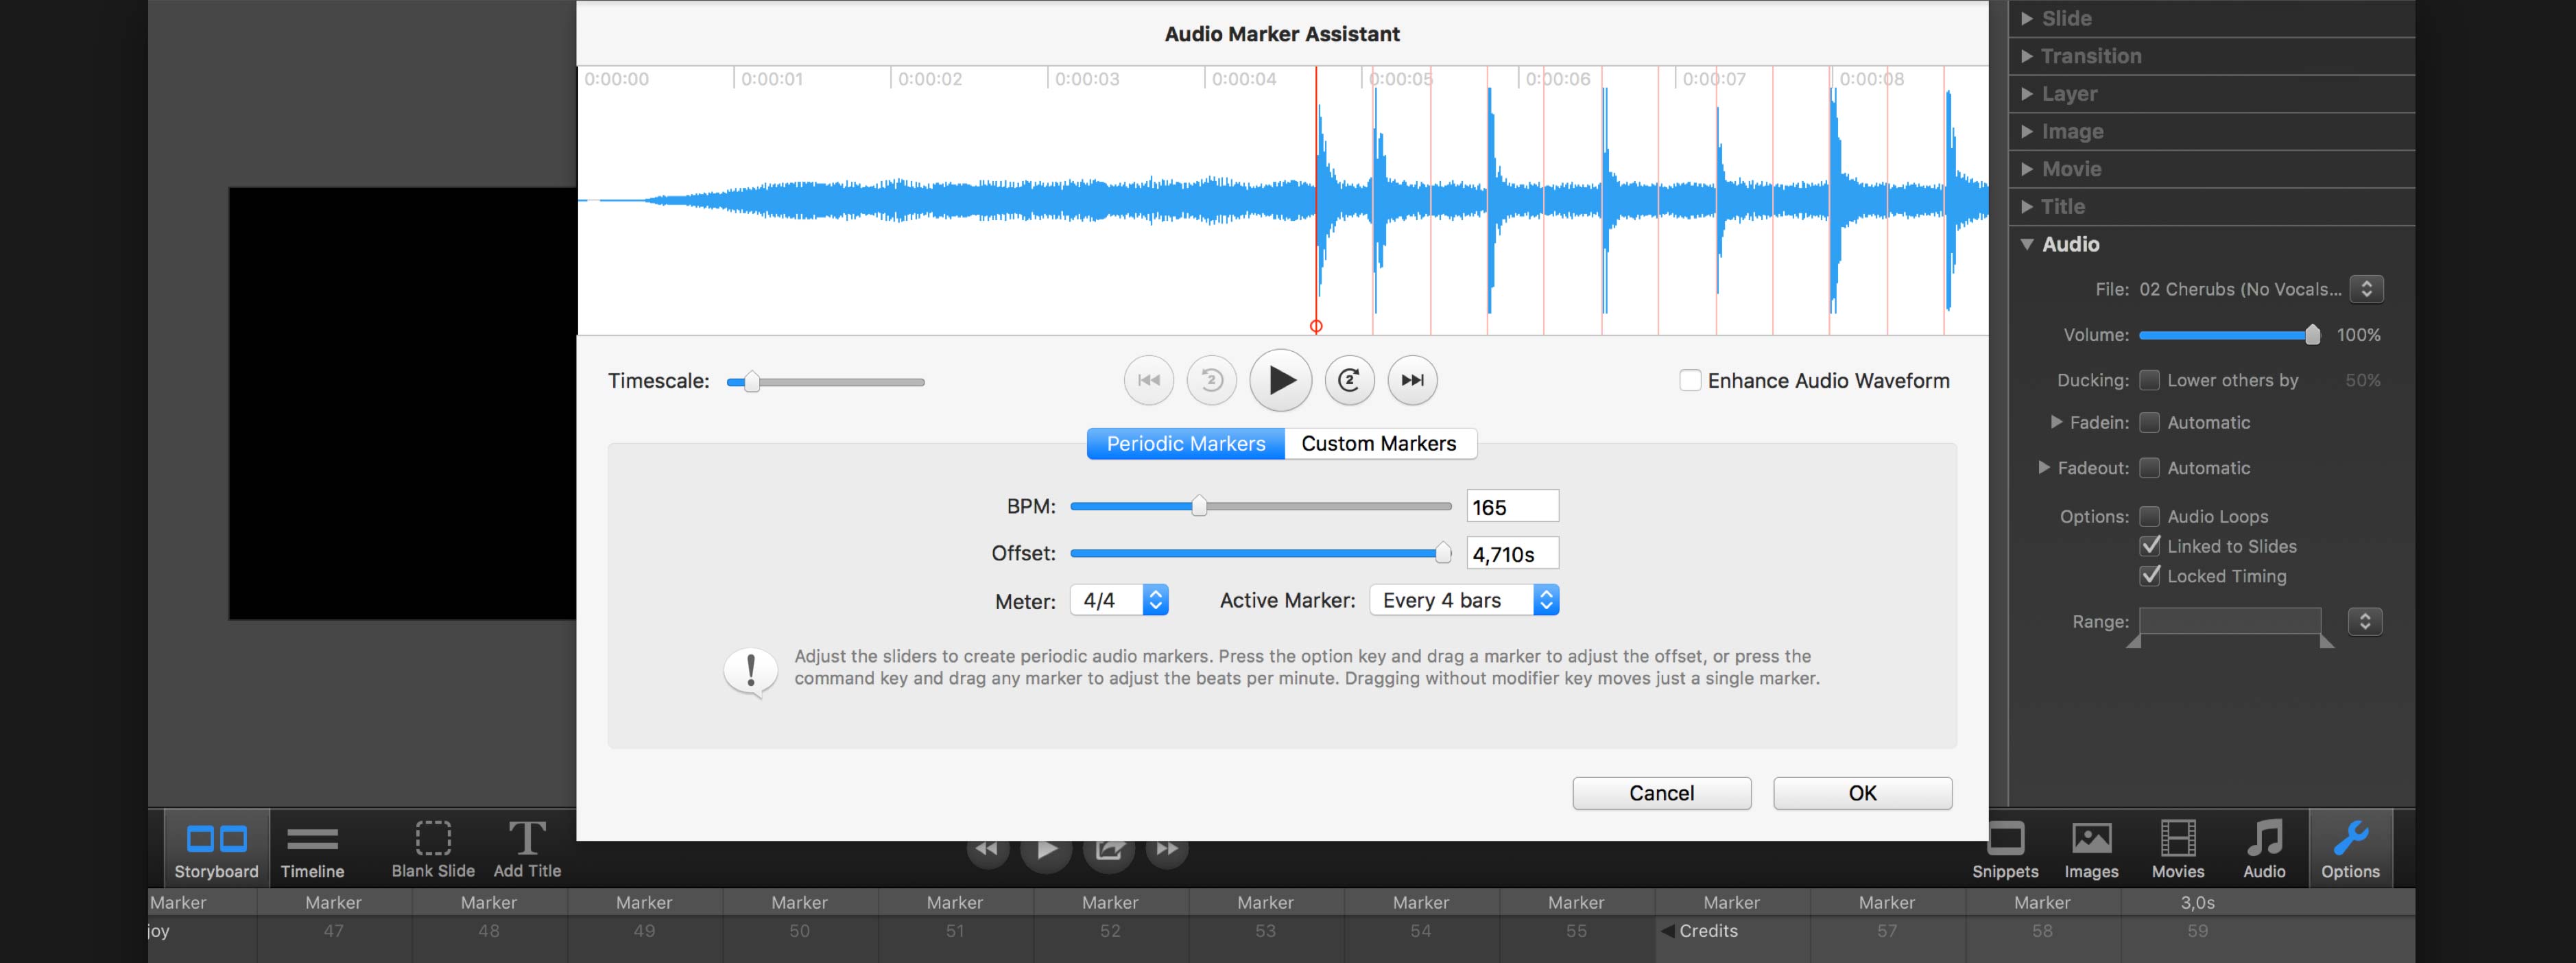 FotoMagico Screenshot Audiomarker